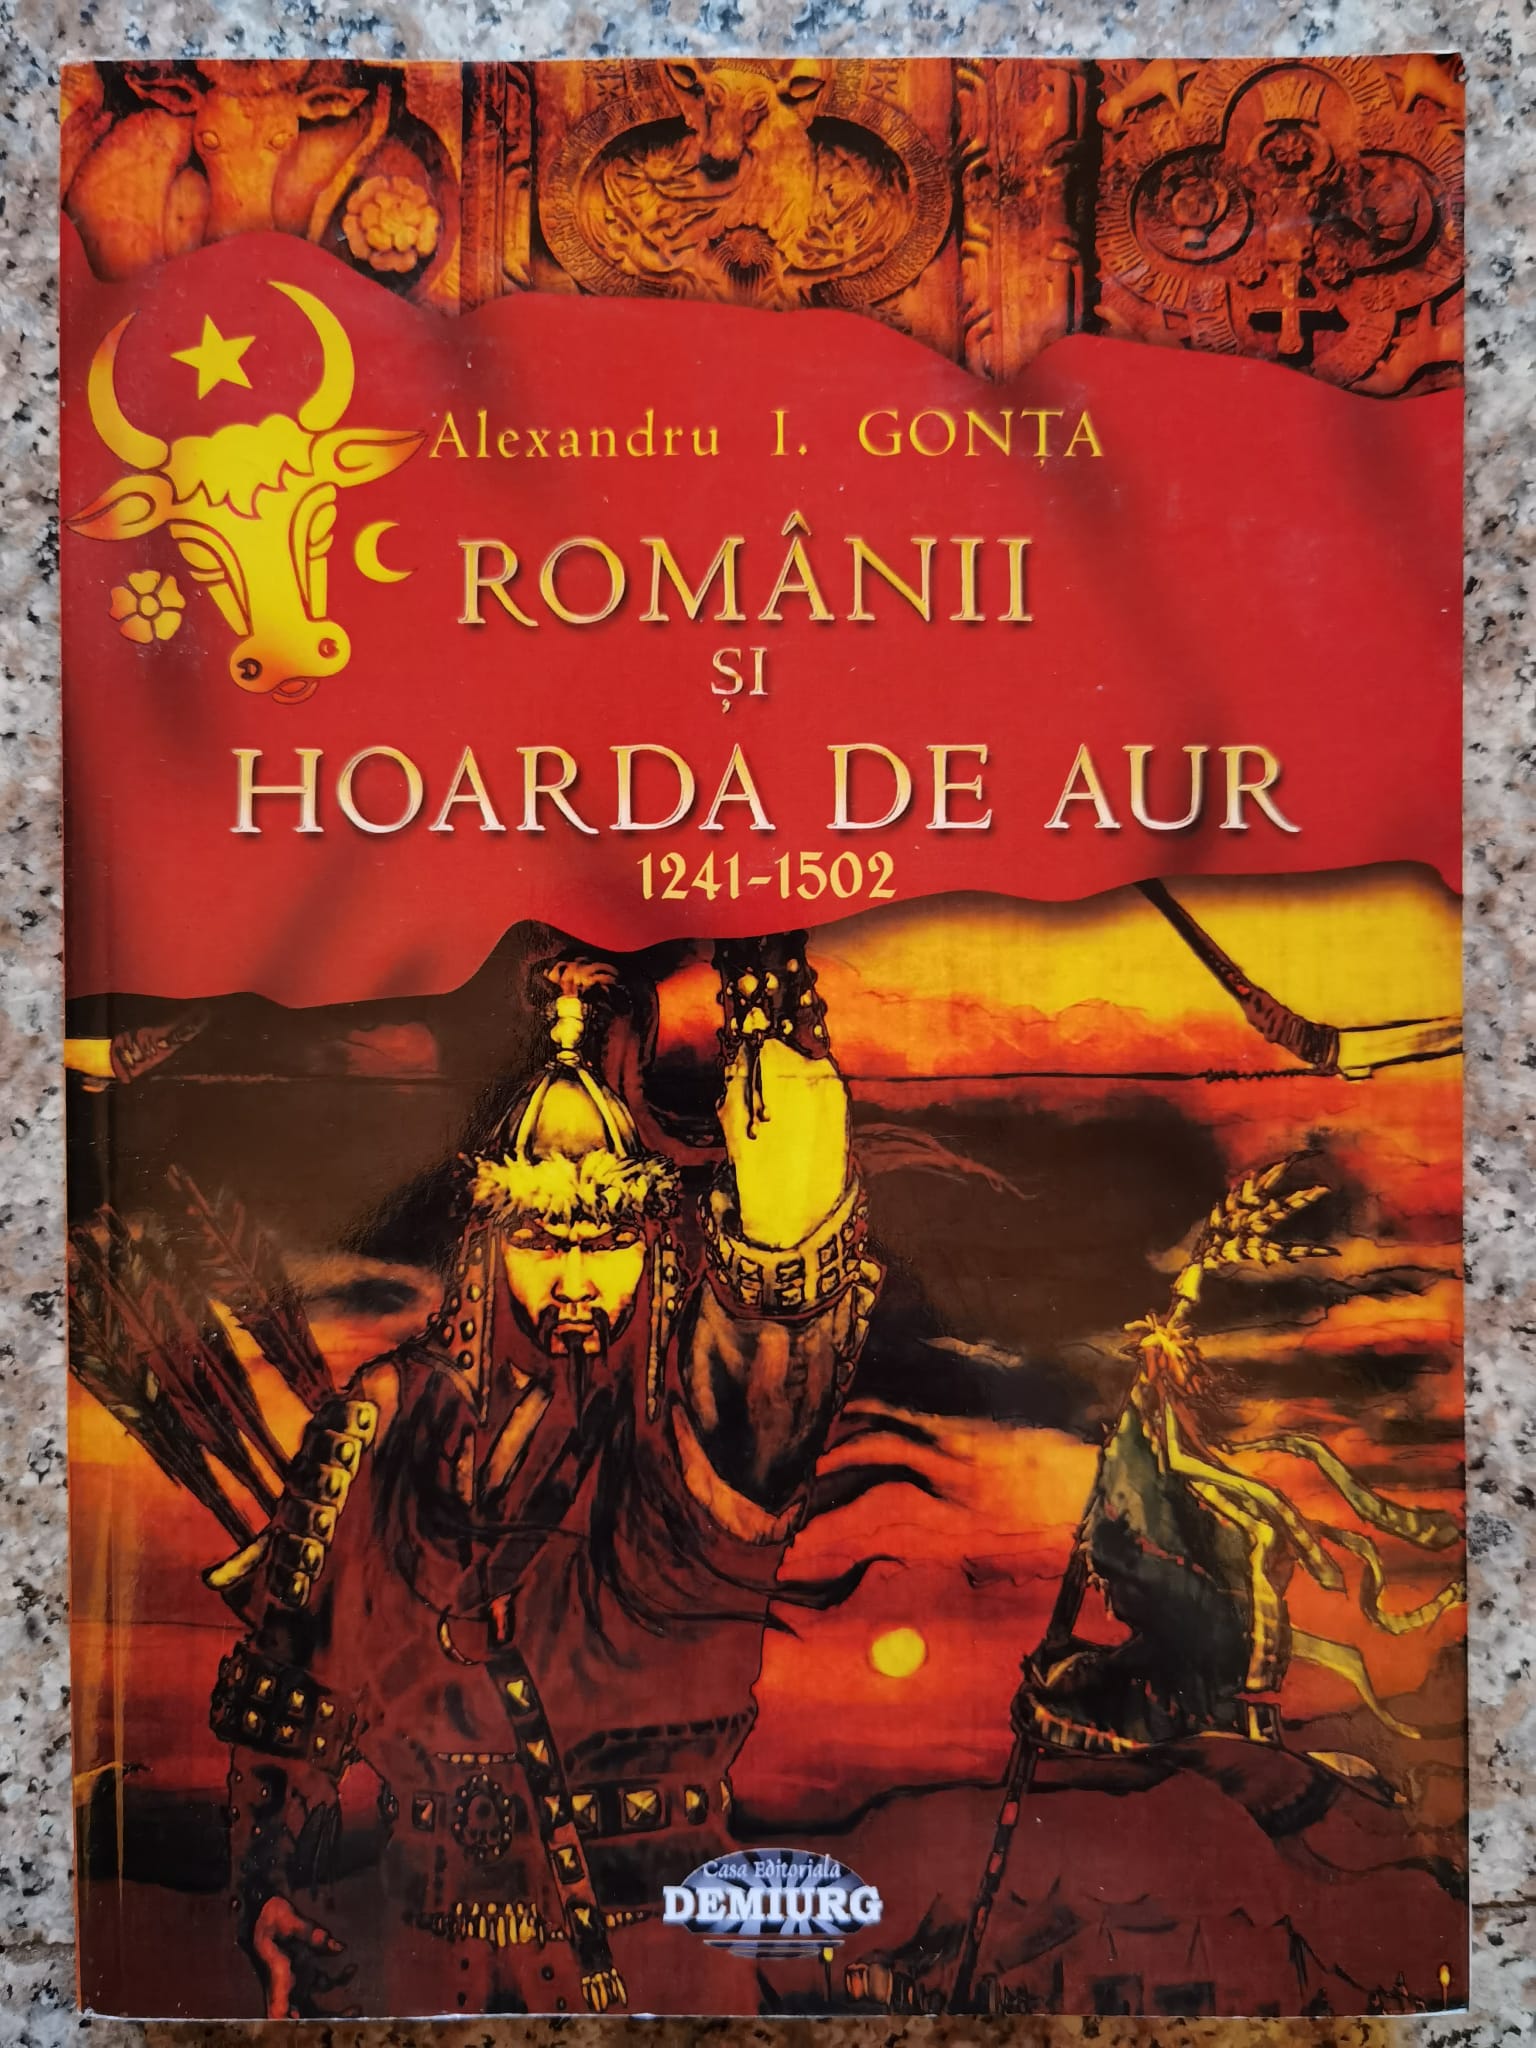 romanii si hoarda de aur (1241-1502)                                                                 alexandru i. gonta                                                                                  